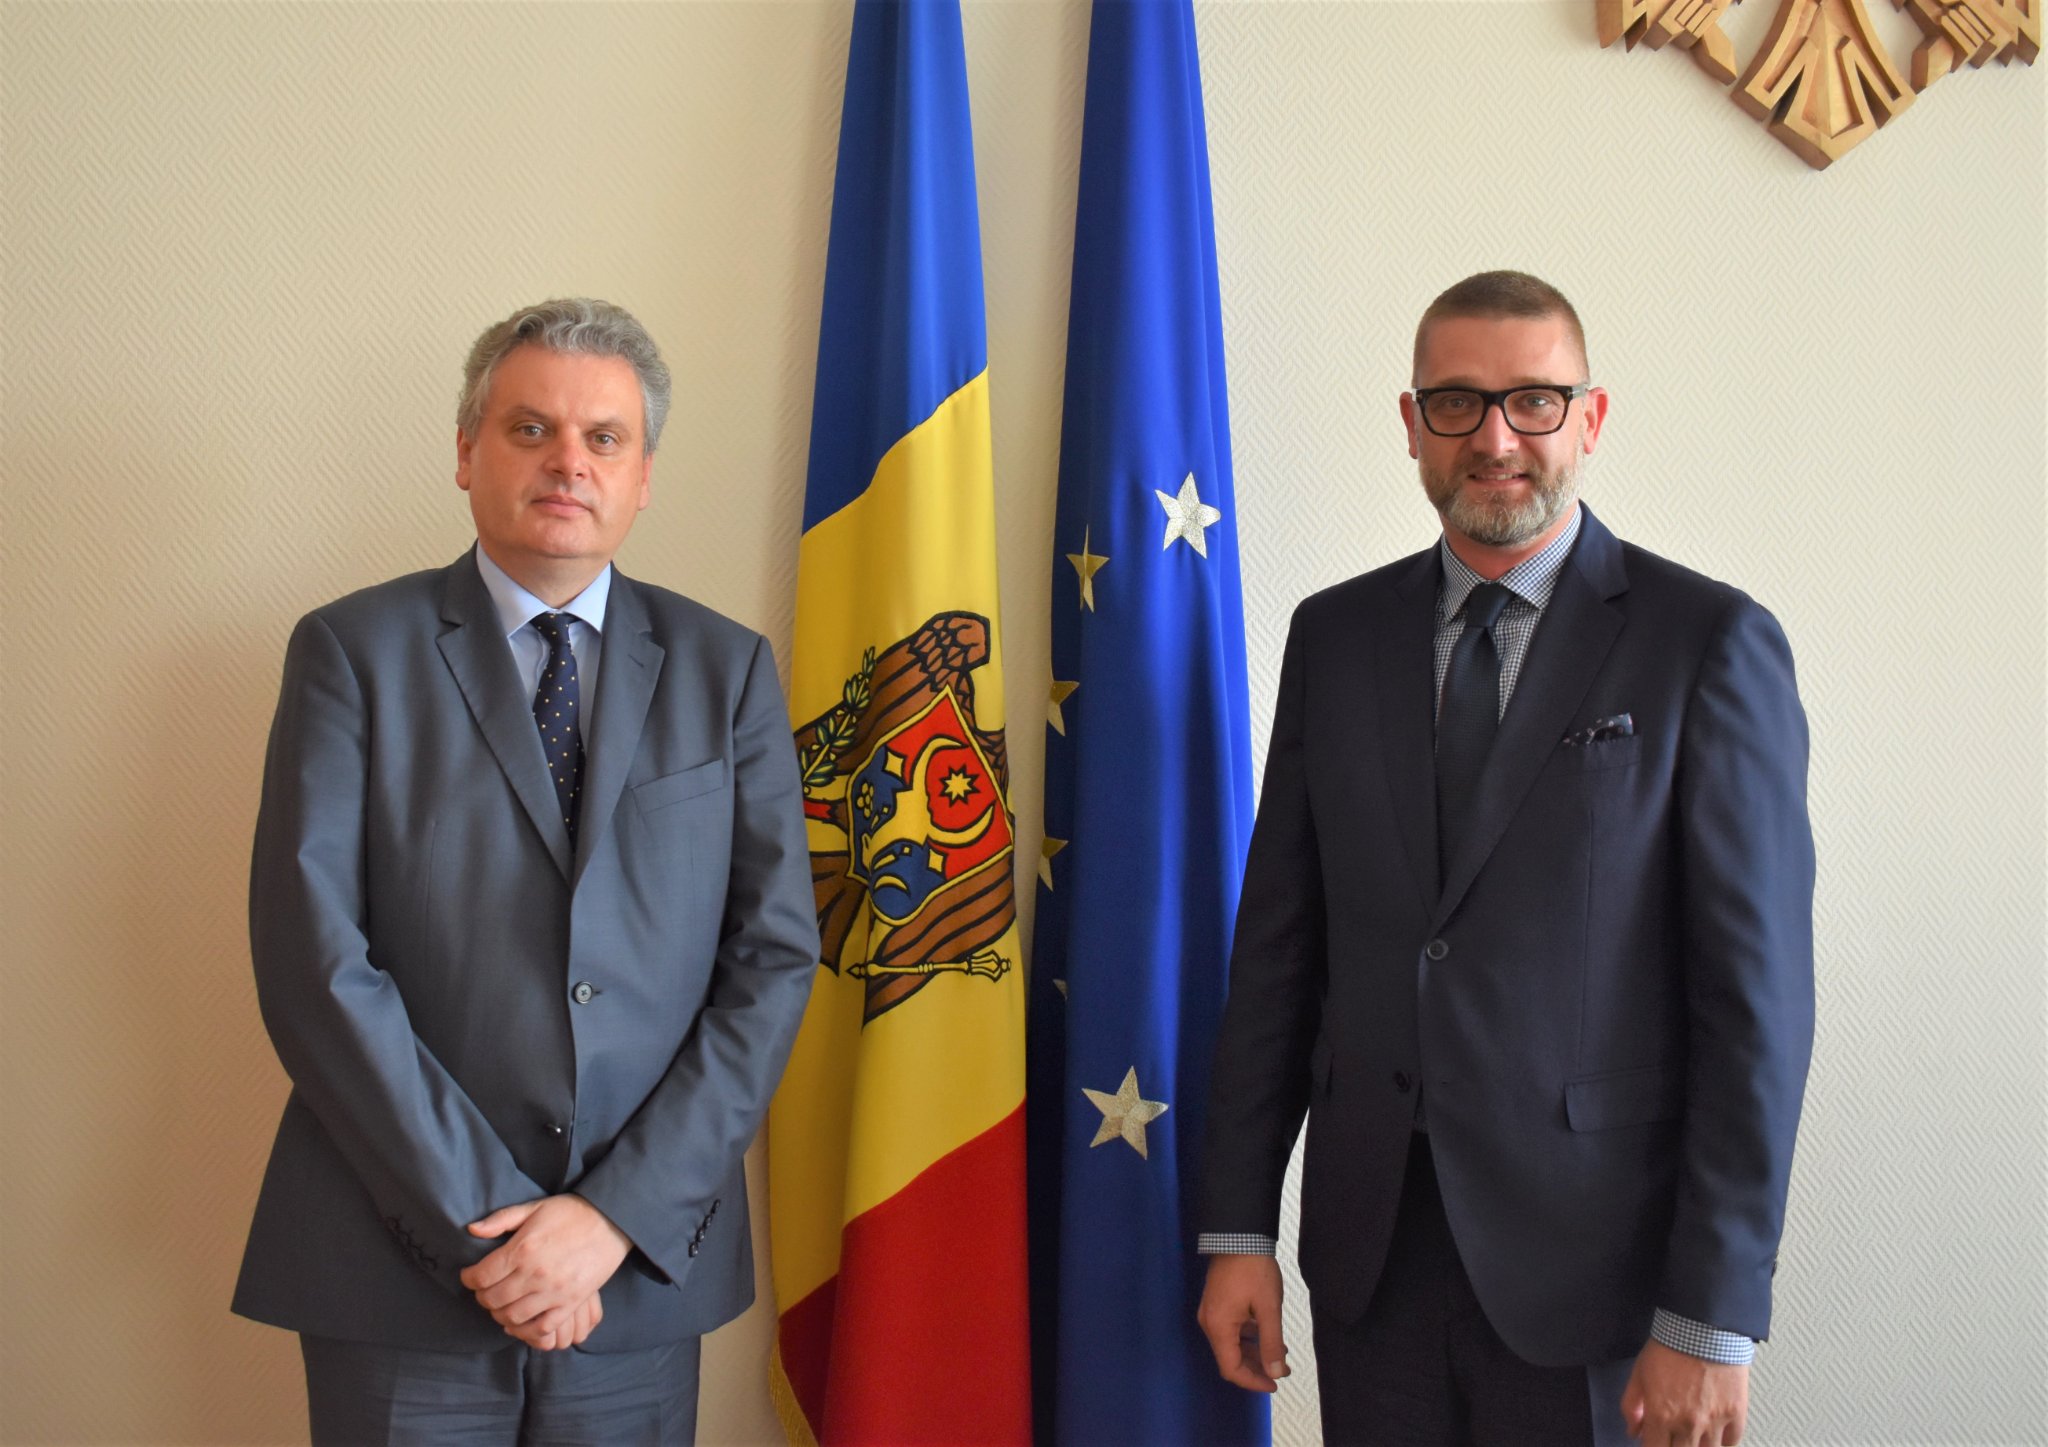 Dimanica curentă a interacțiunii dintre Chișinău și Tiraspol – discutată de Oleg Serebrian cu Ambasadorul României